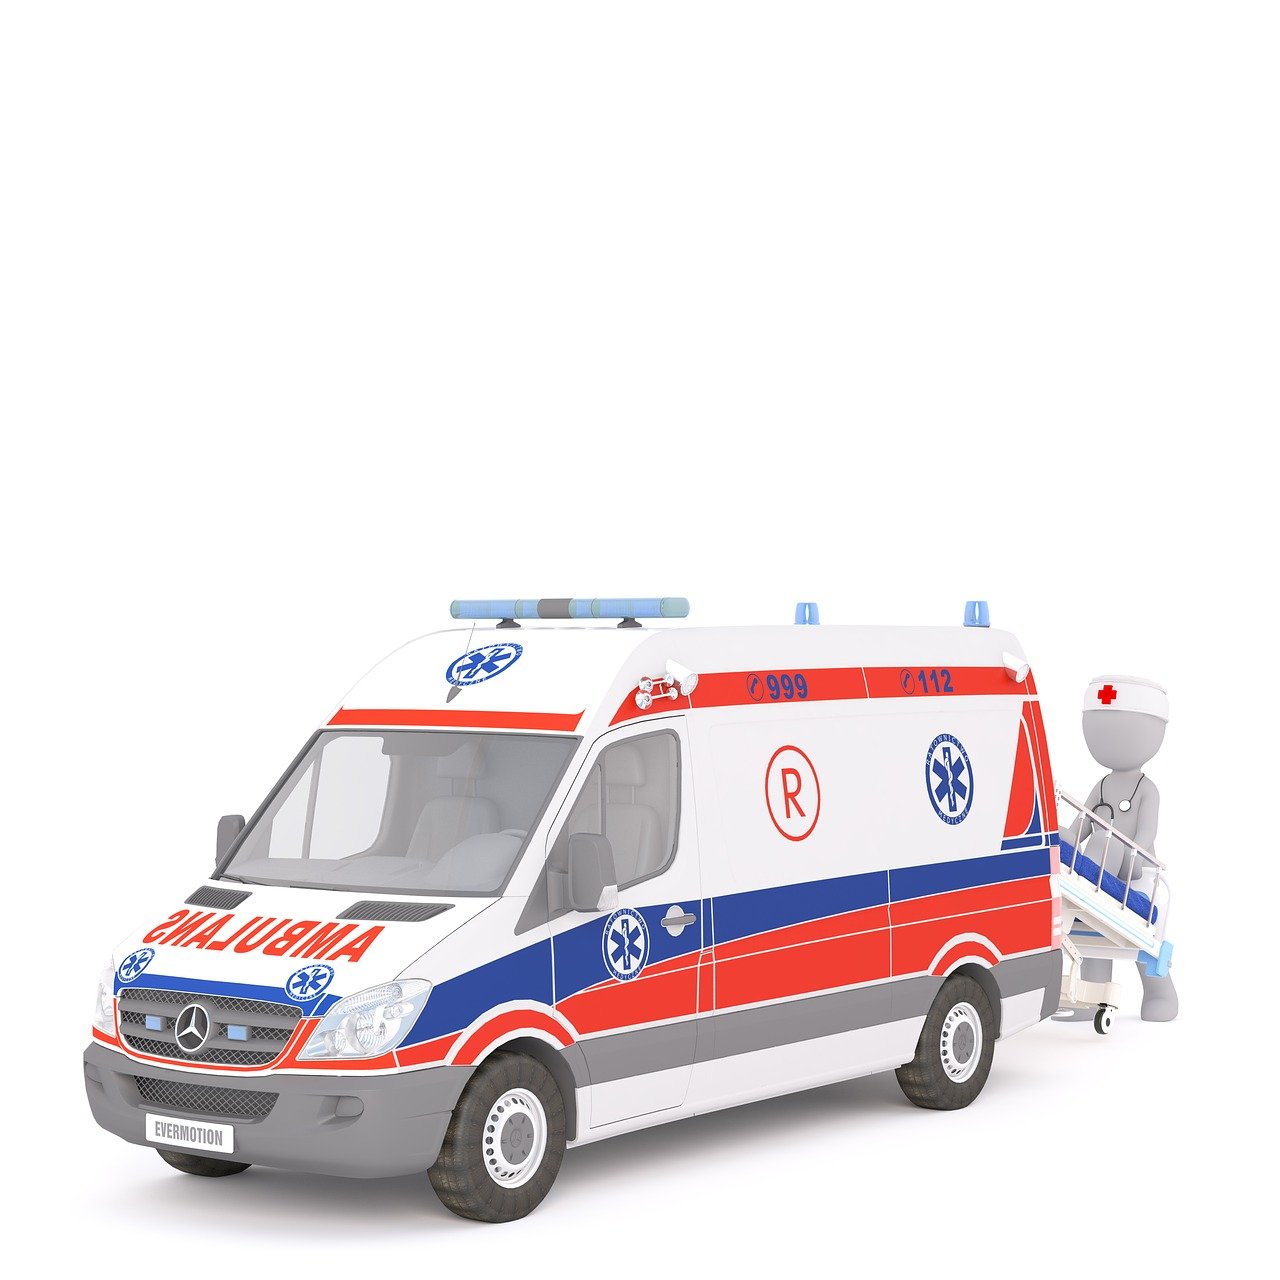 L’équipement des ambulances